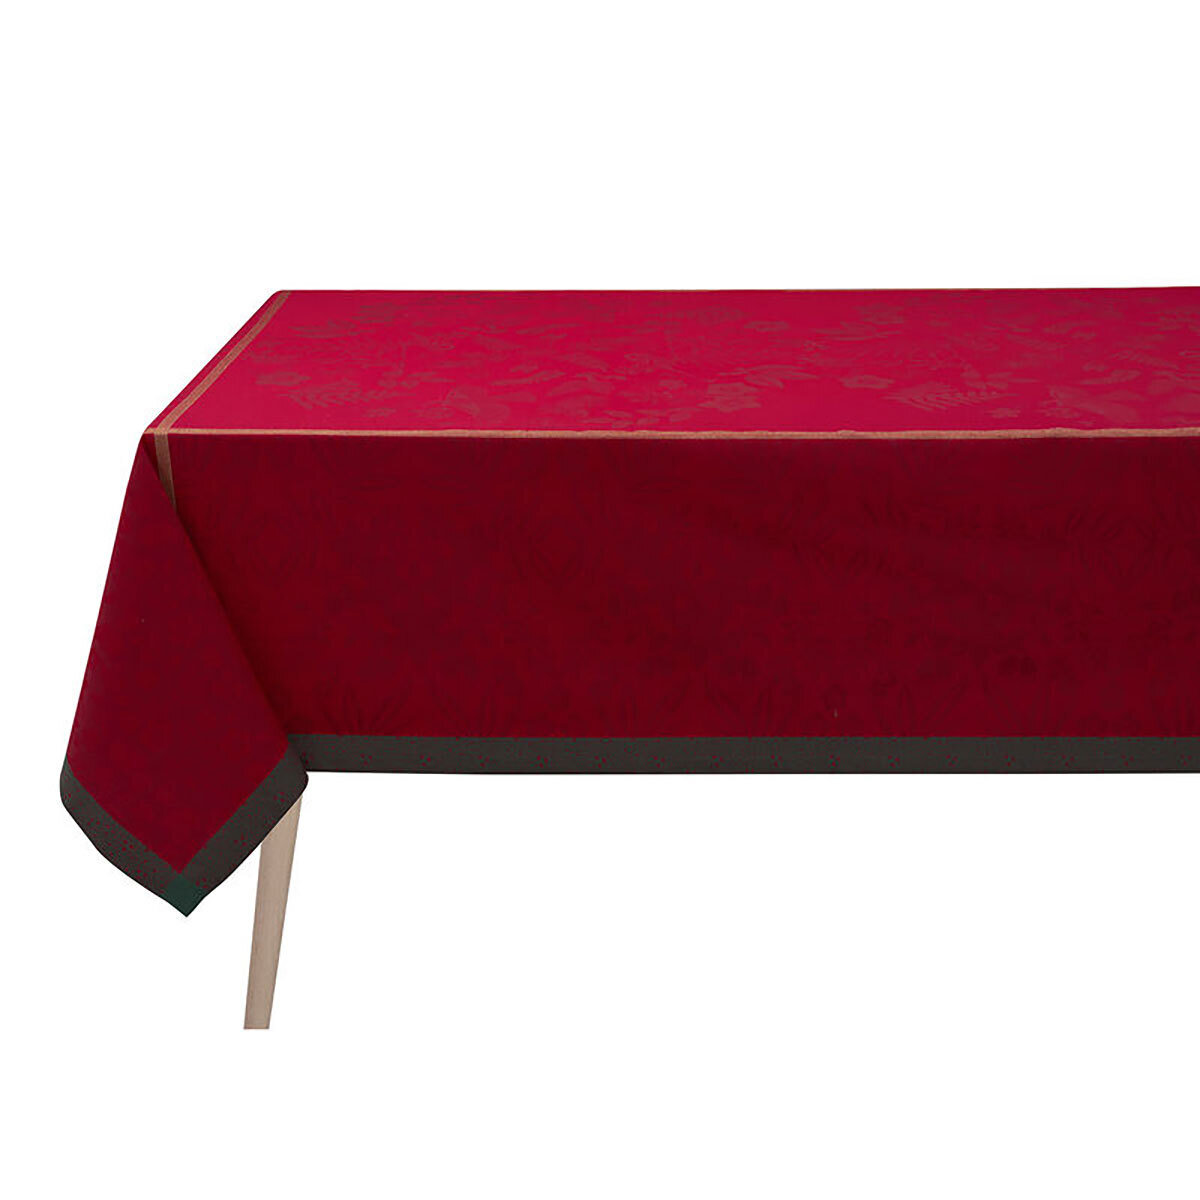 Le Jacquard Francais Tablecloth Poesie Hiver Red 99% Cotton 1% Lurex 69 x 69 Inch 27689